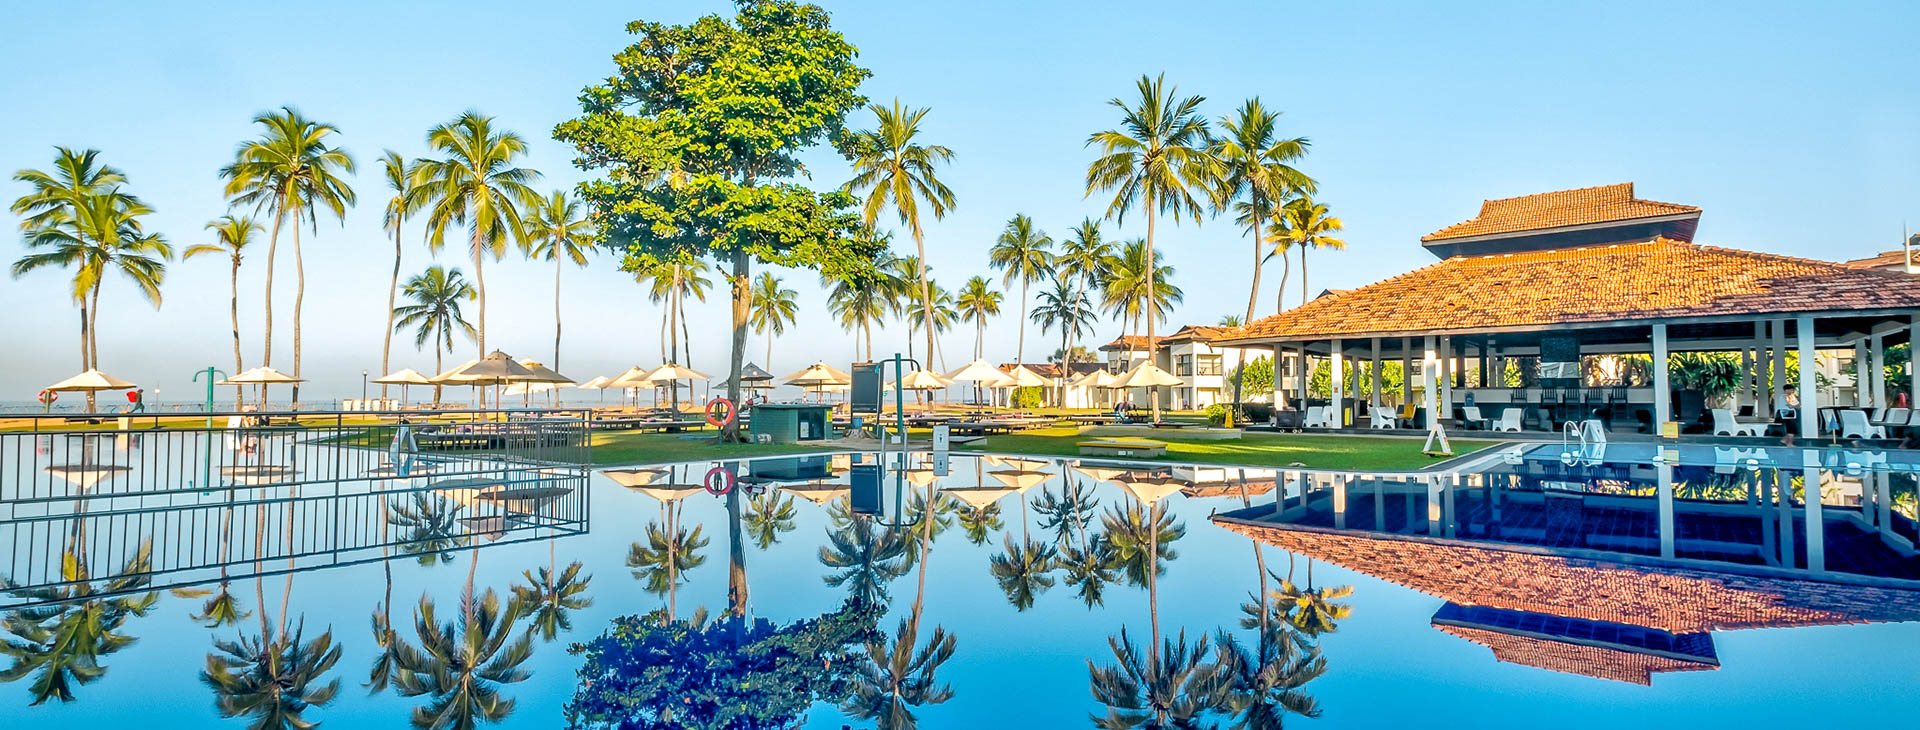 Club Hotel Dolphin - dovolená na Srí Lance Obrázek2